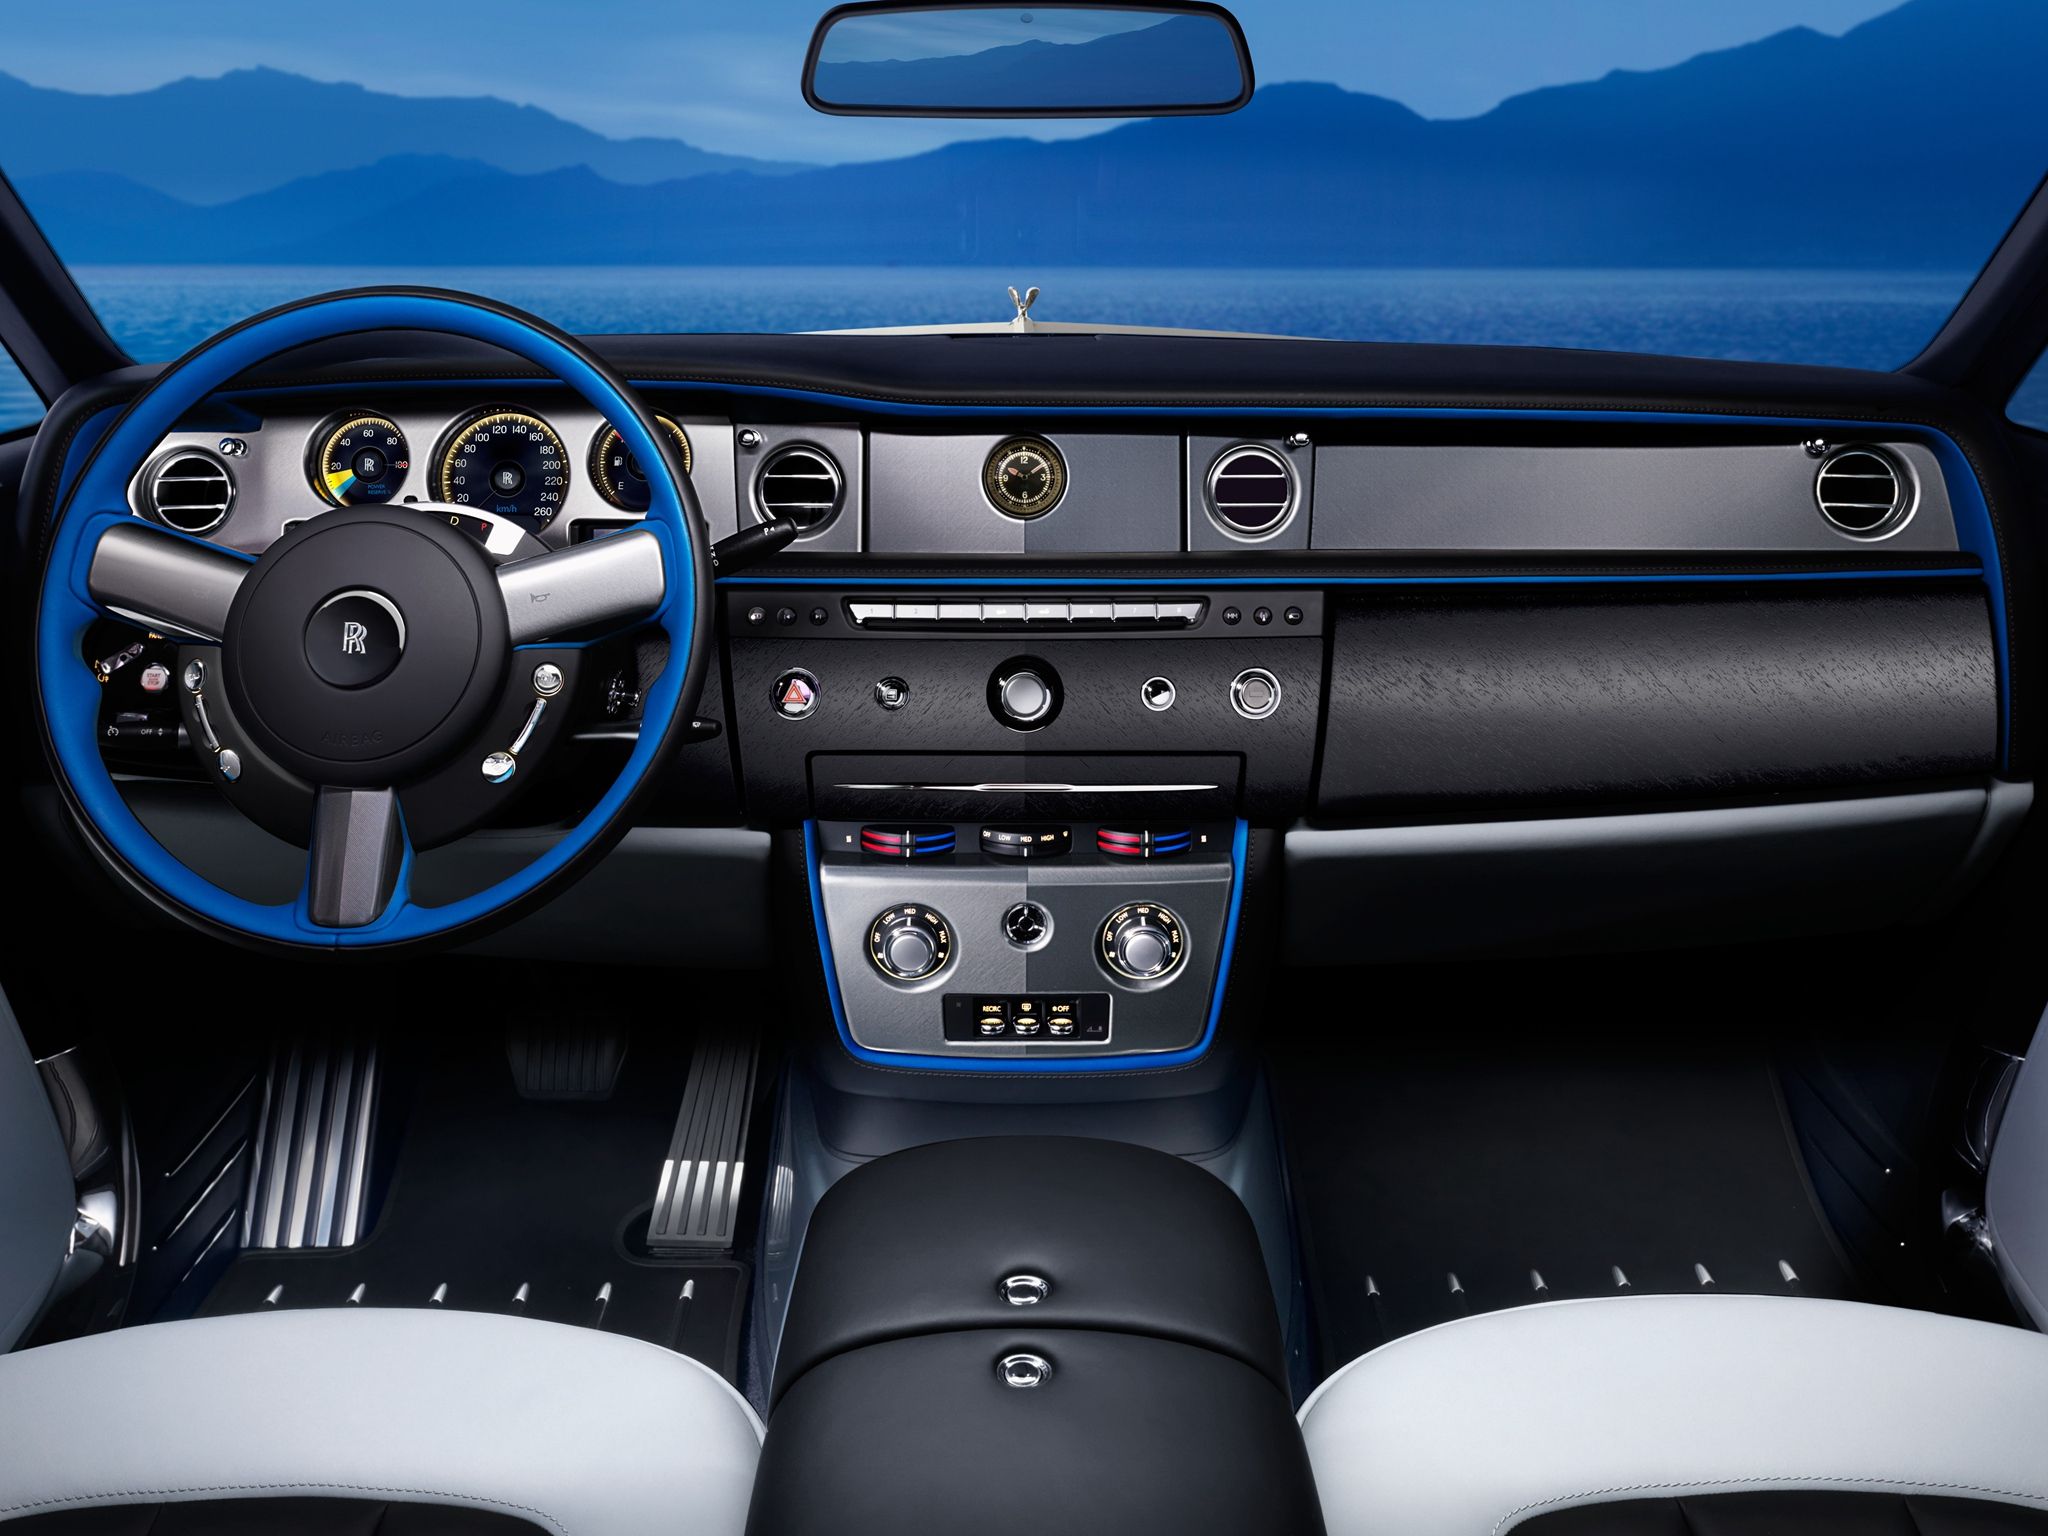 Rolls-Royce Phantom Drophead Coupe: the Apex of Luxury